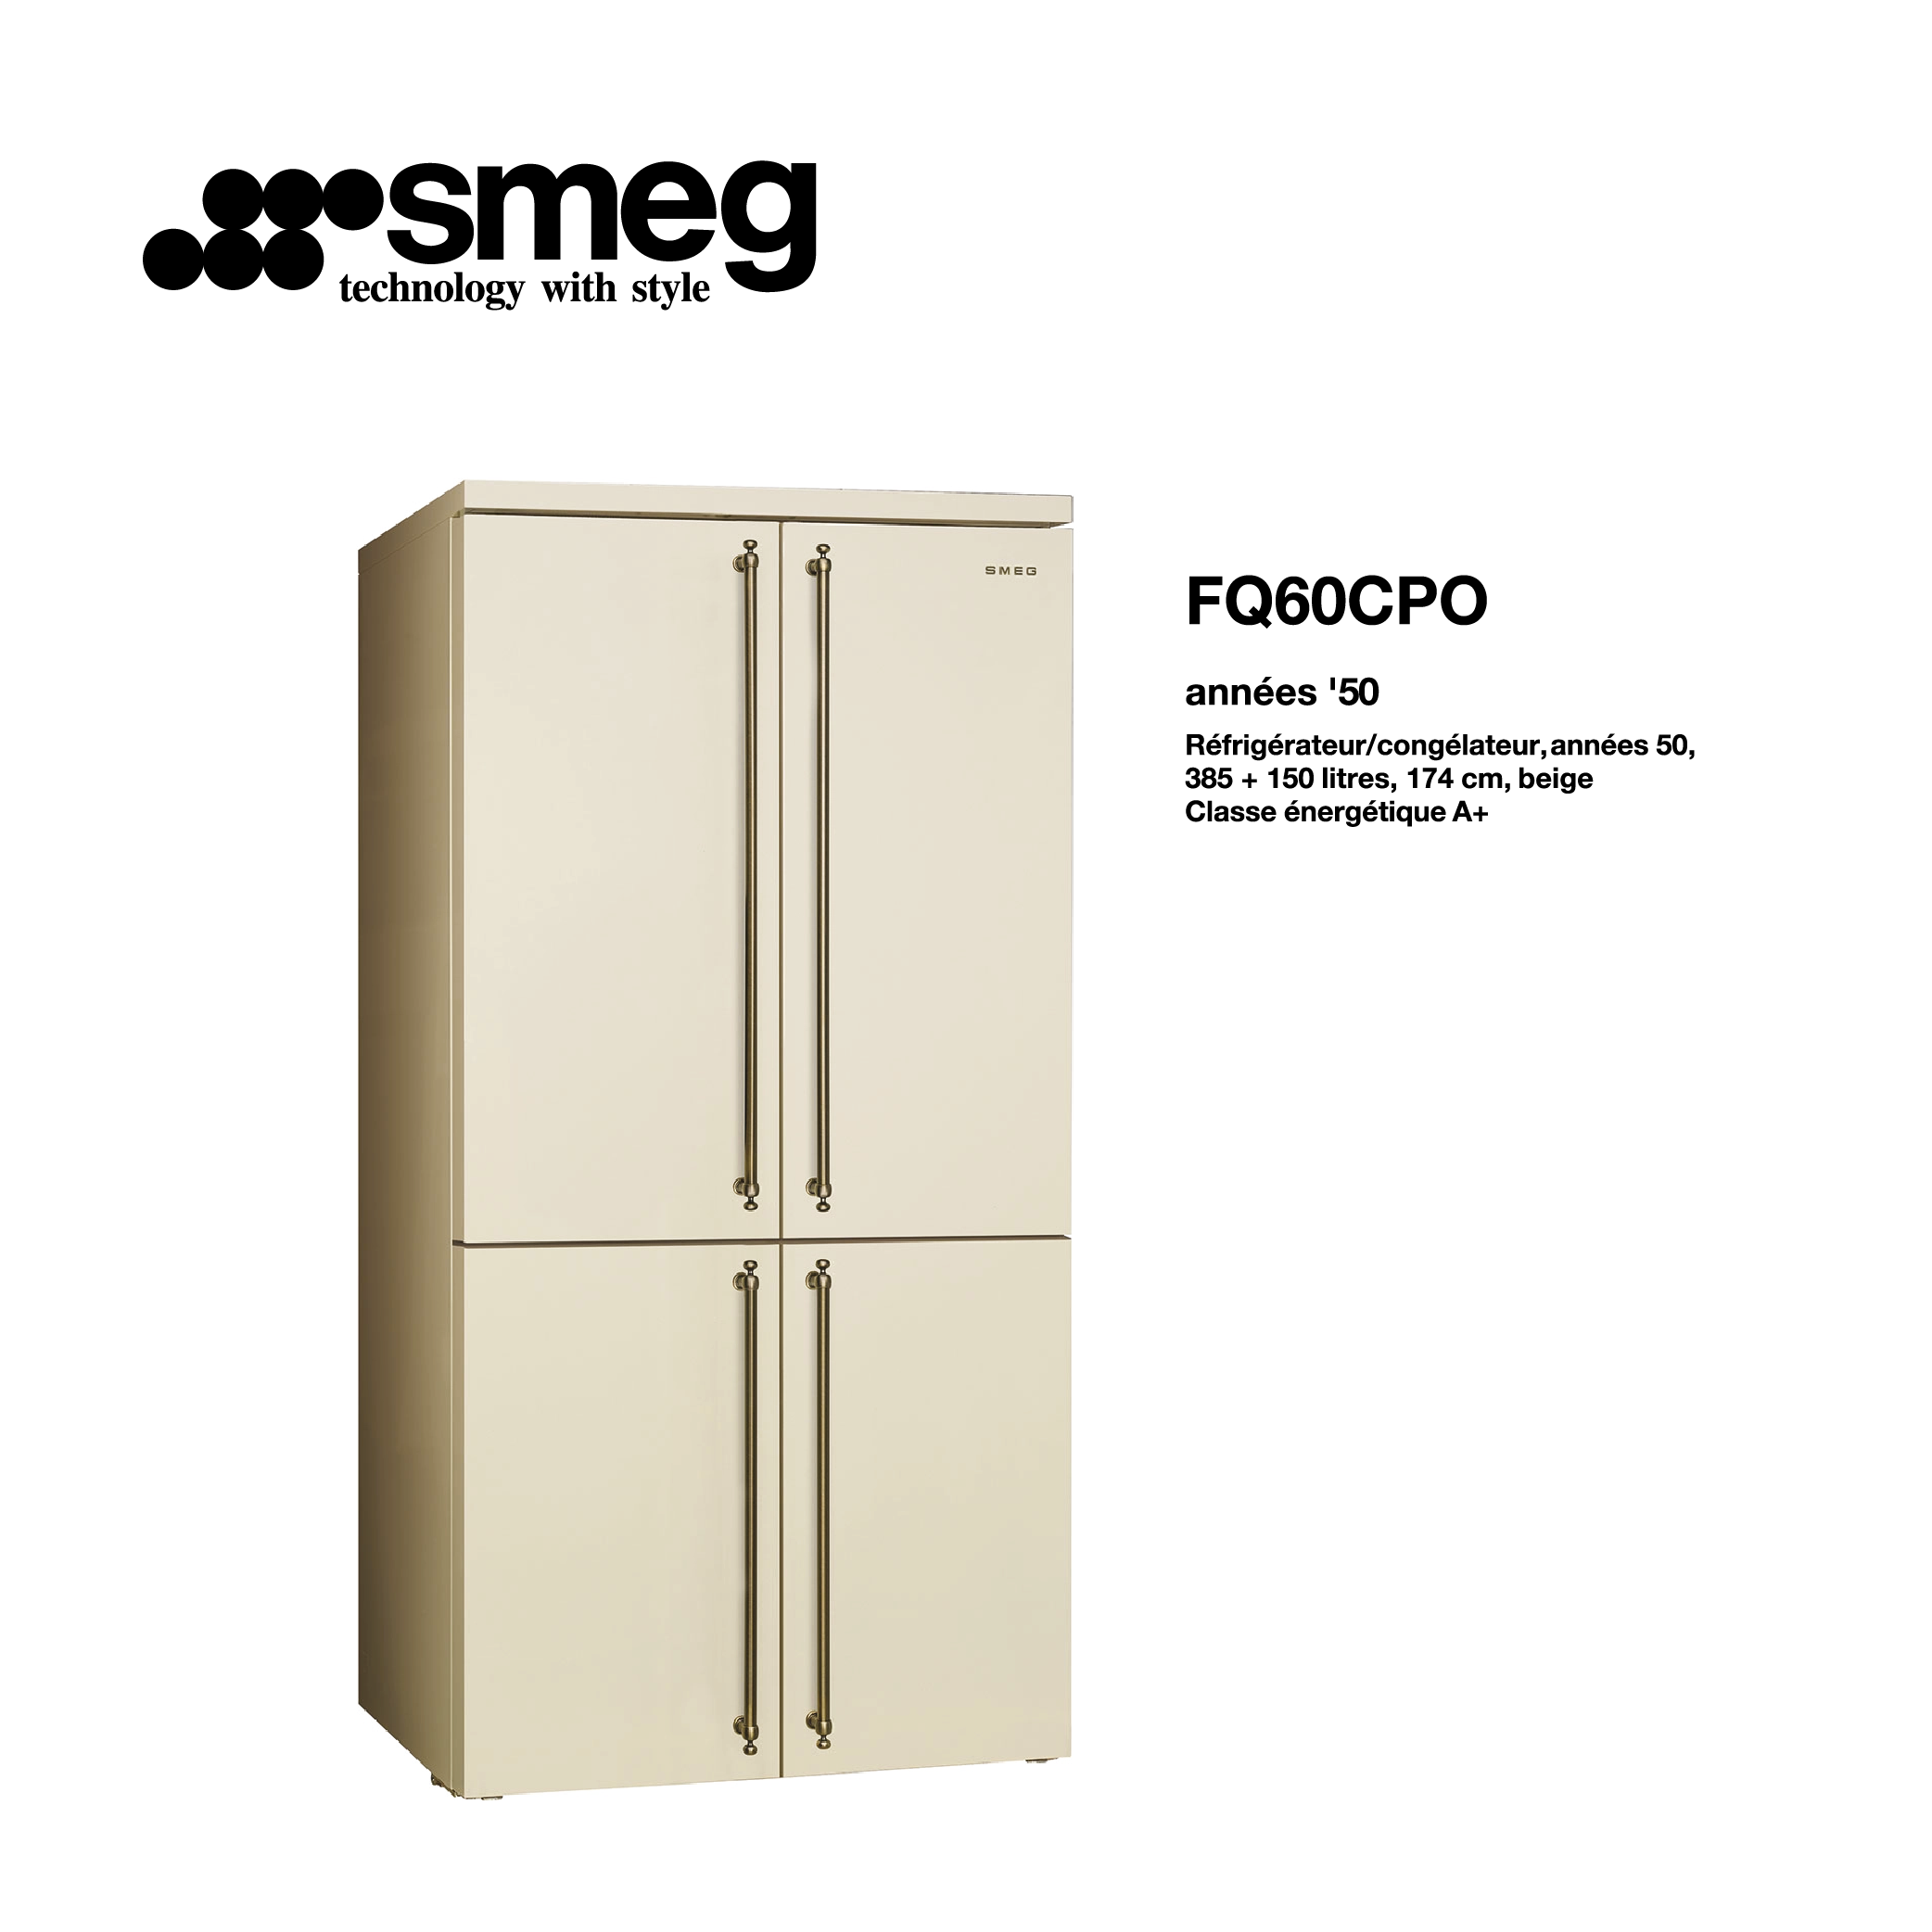 Réfrigérateur 4 portes smeg Froid braissé congélateur froid ventilé 385 litre + 150 litre couleur Beige FQ60CPO